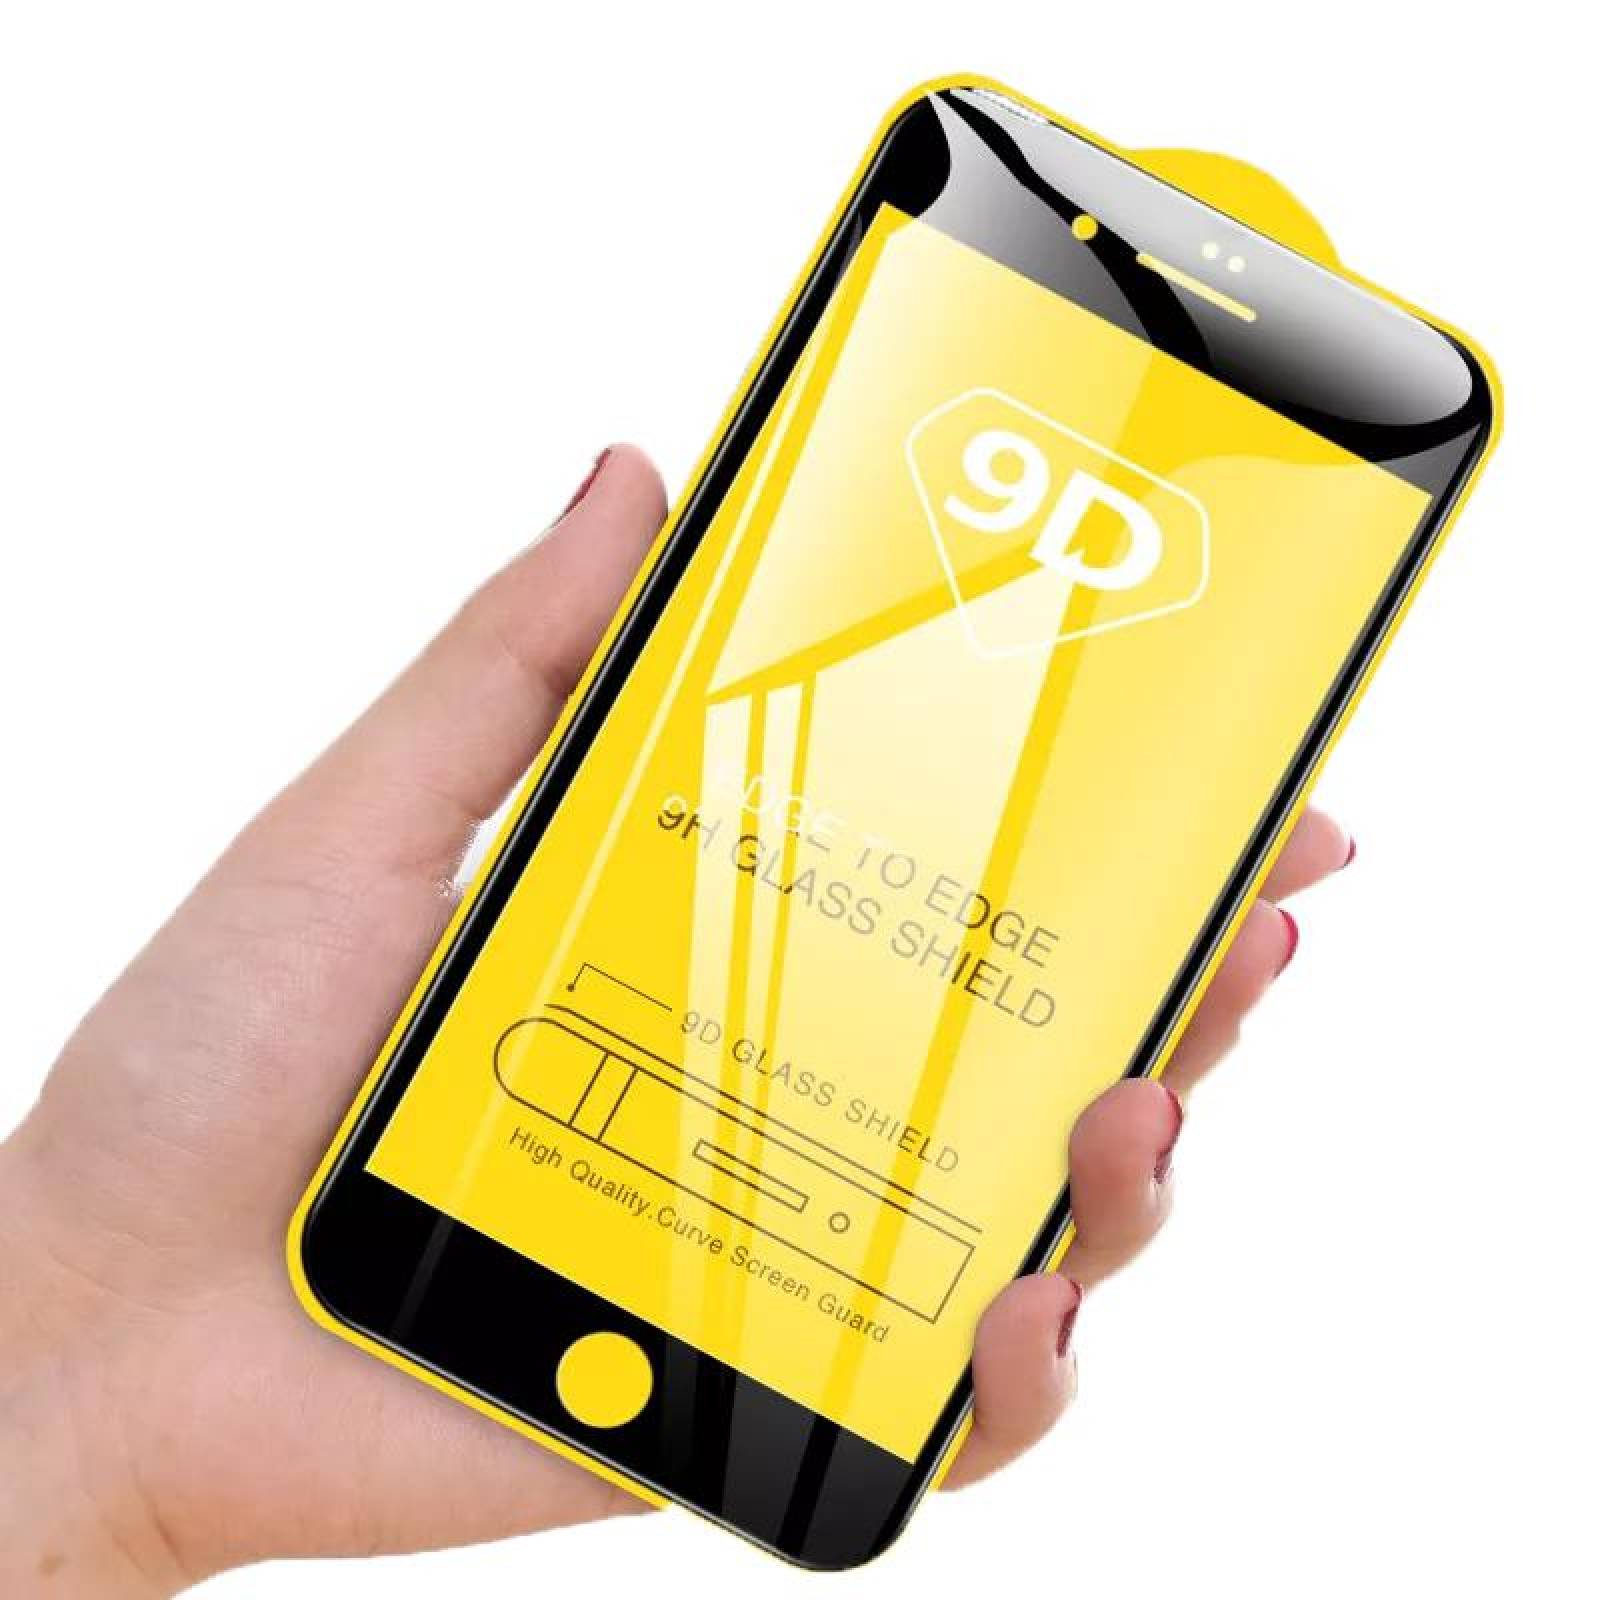 Mica de Cristal Templado para iPhone SE 2020, Iphone 8 y 7 